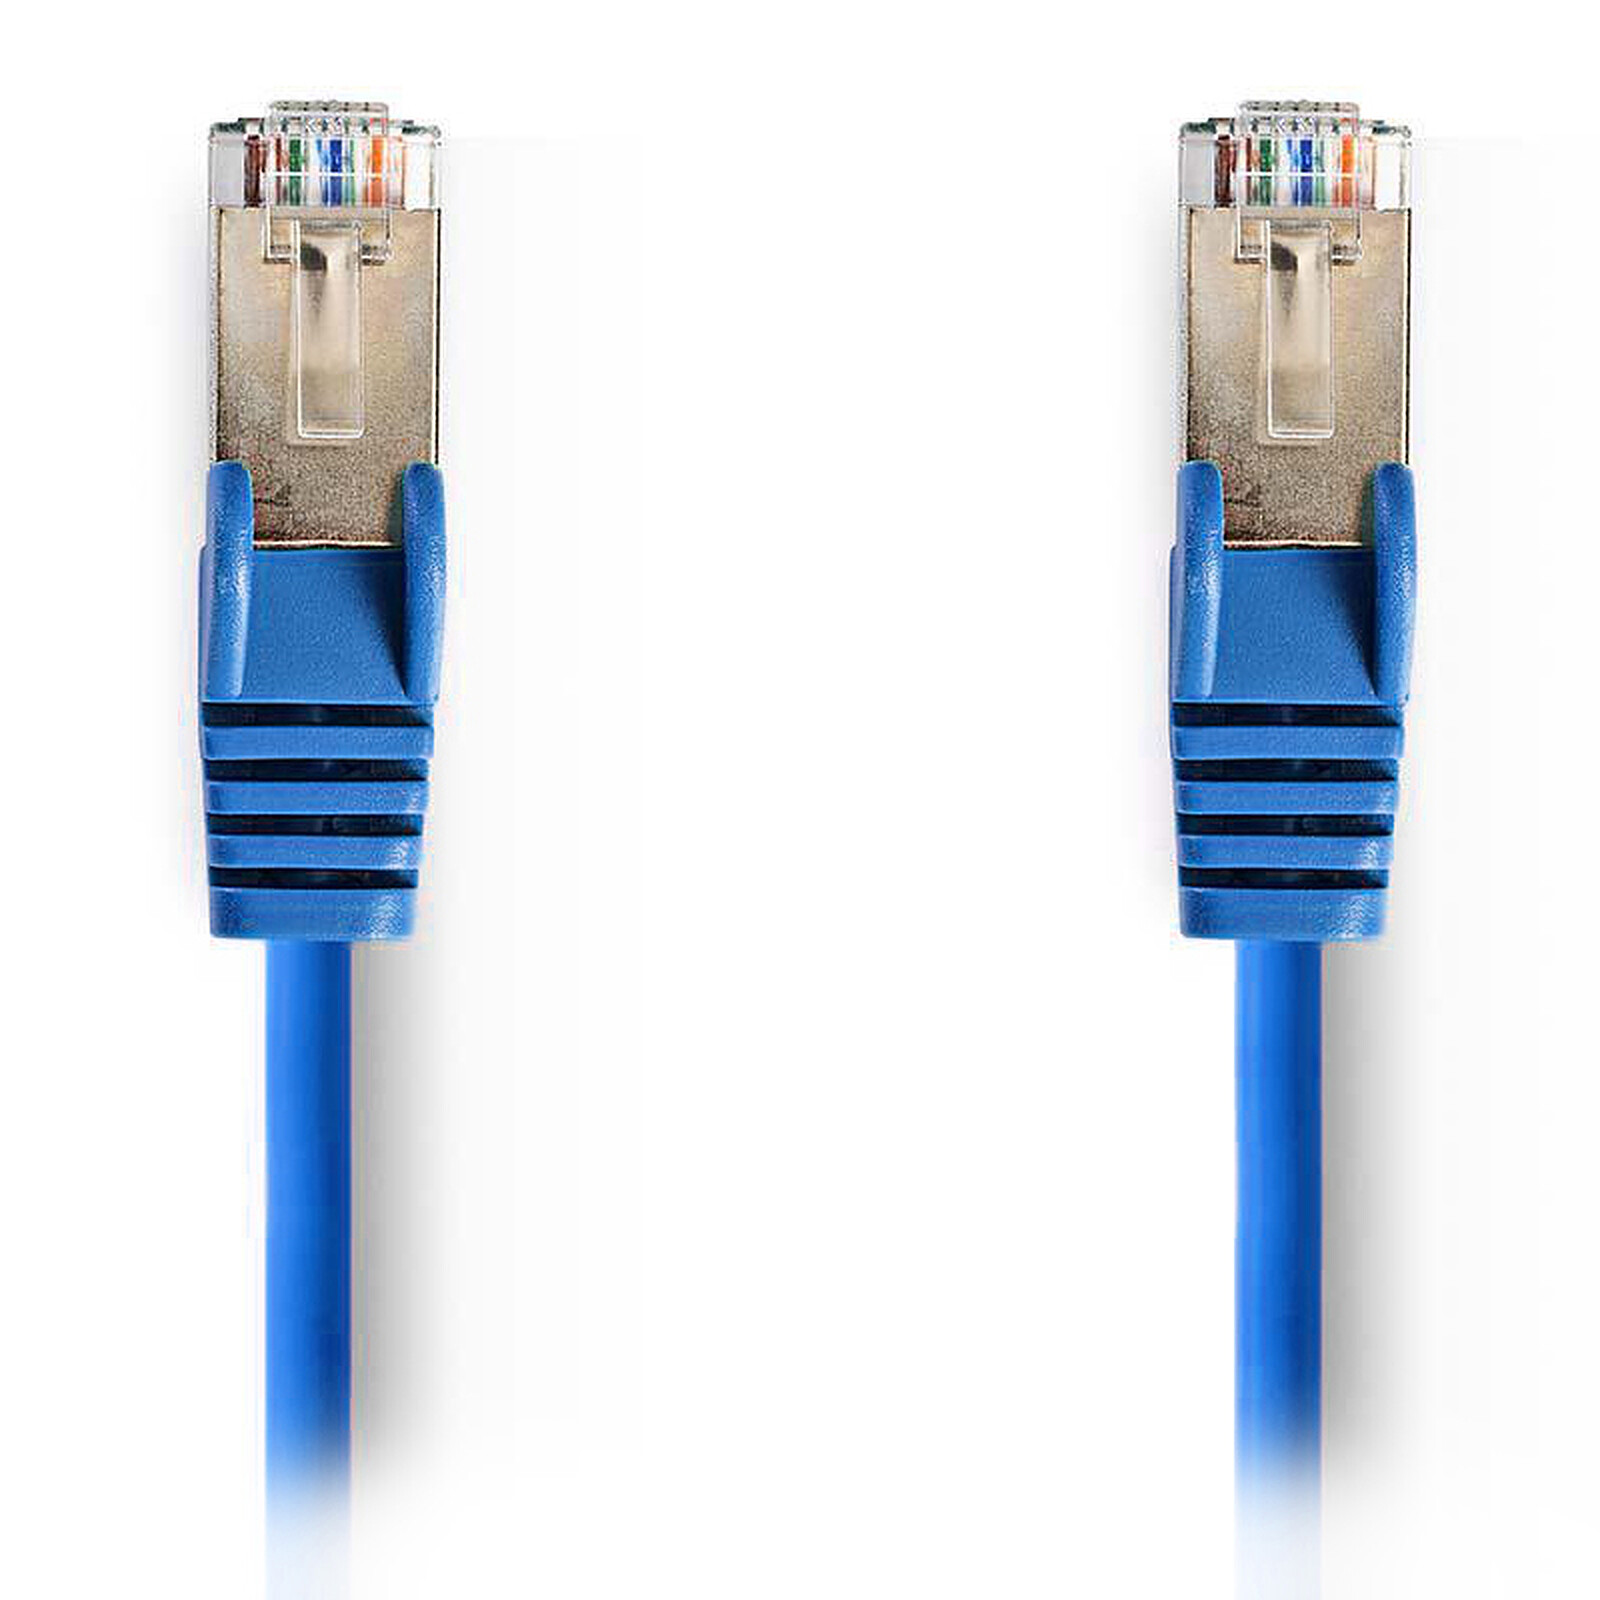 Câble ethernet réseau Cat6 RJ-45 blindé 9 pi Bleu